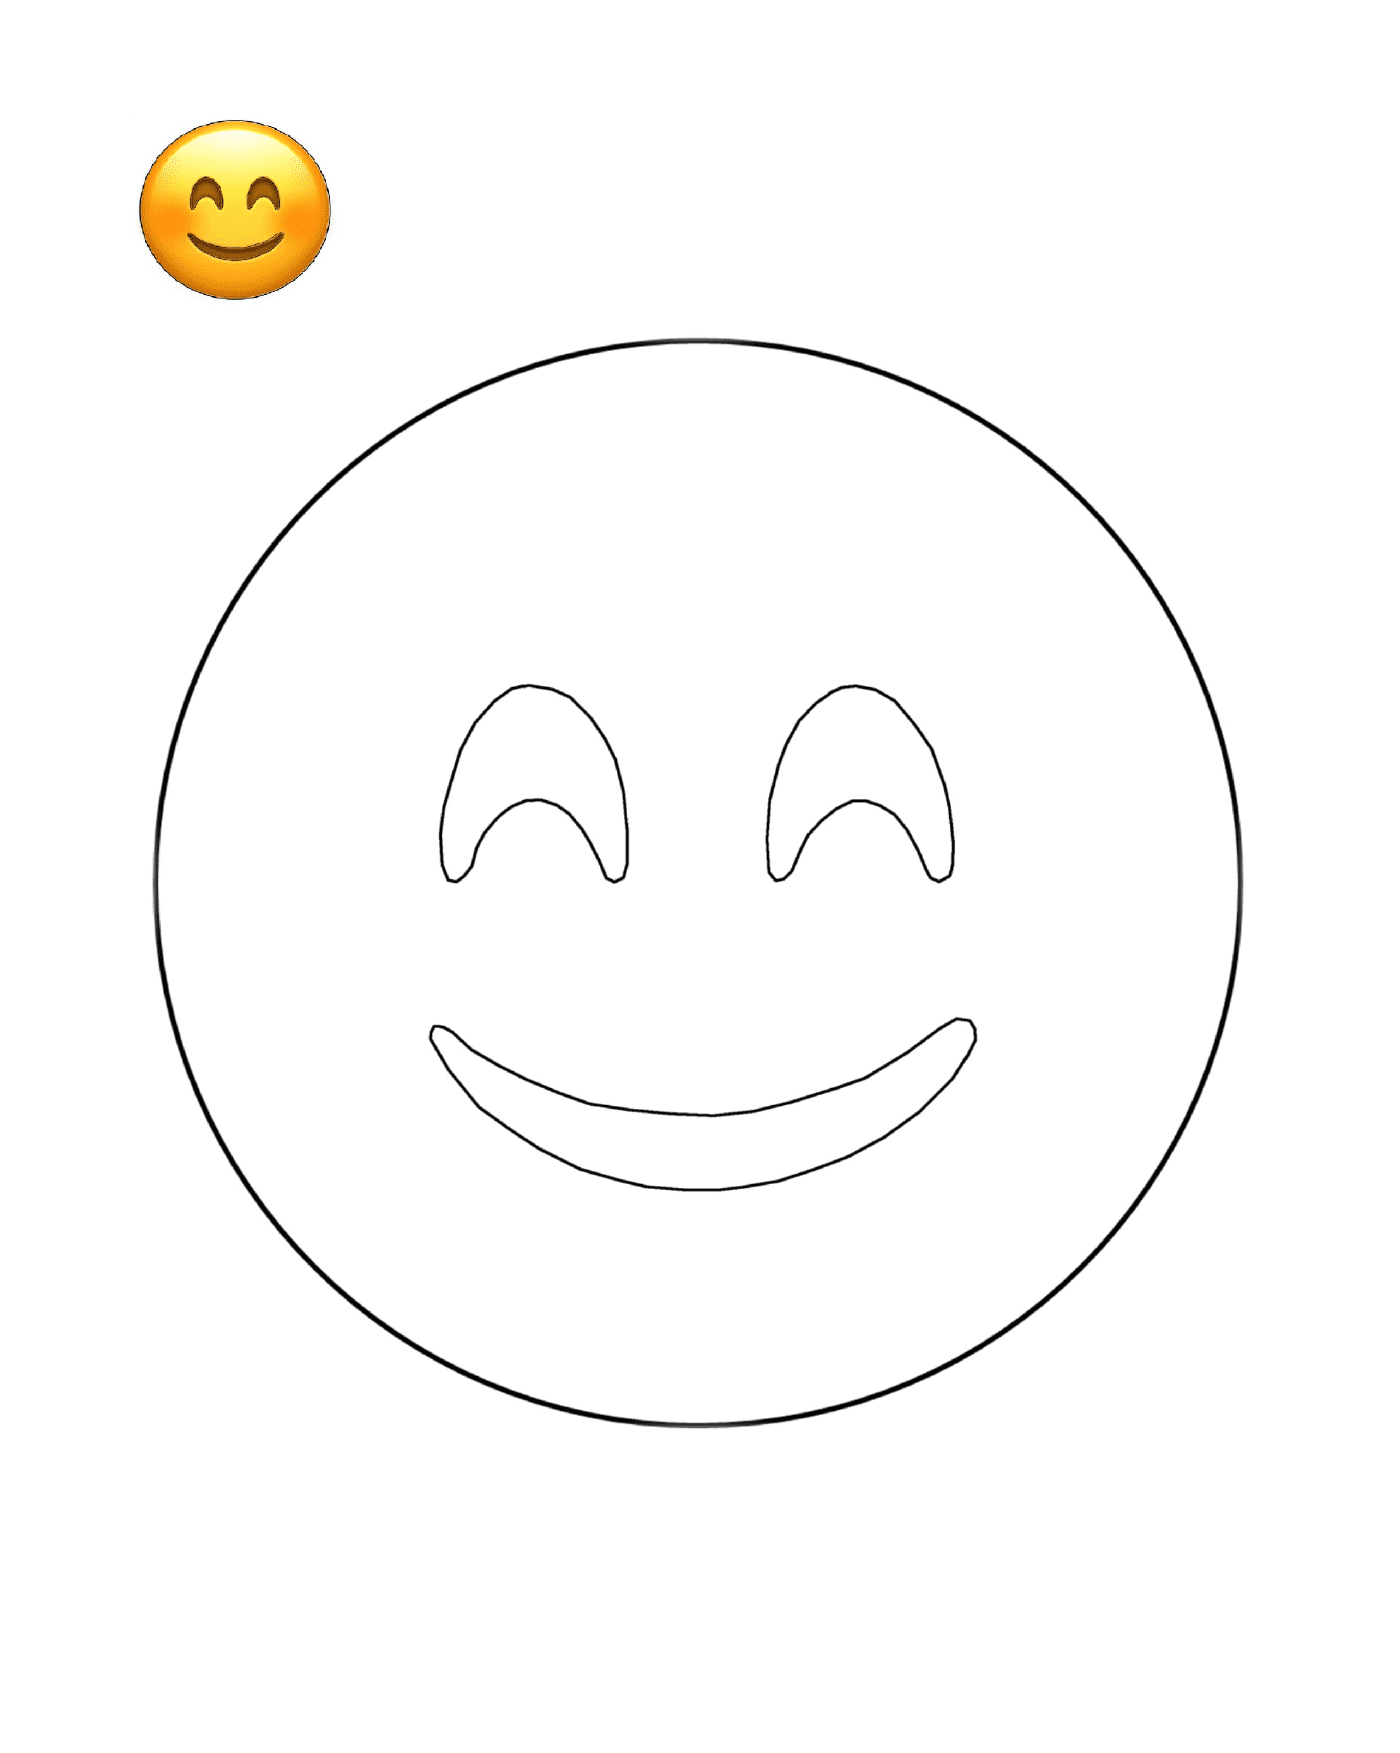  Un rostro sonriente es dibujado 